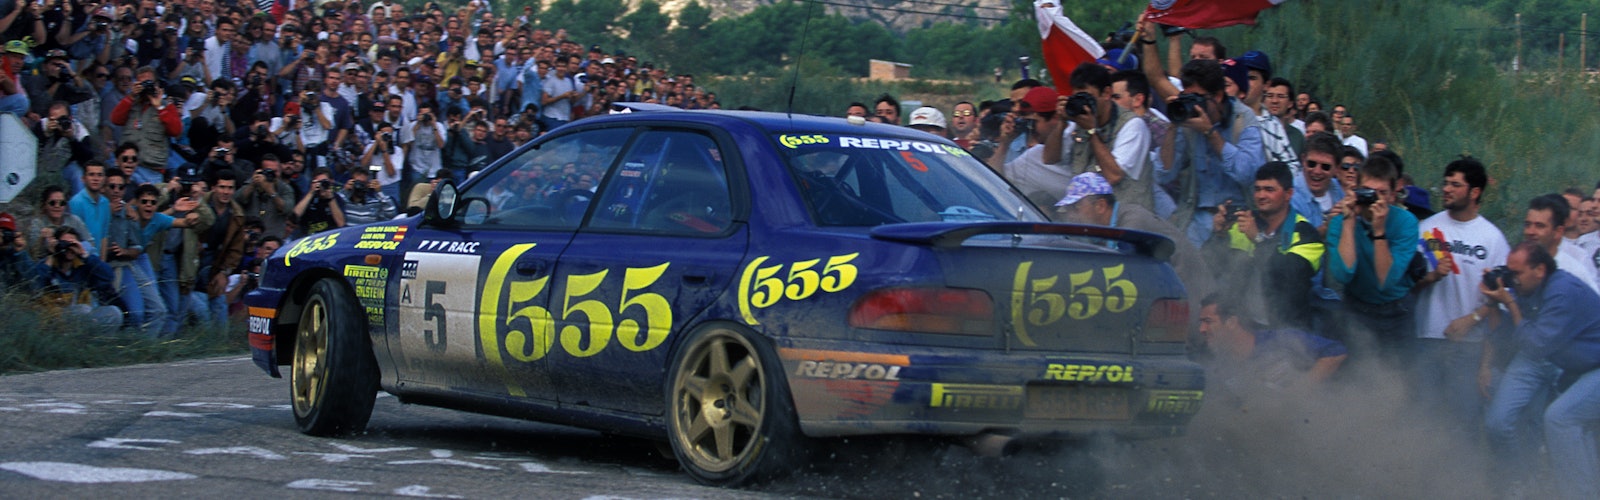 1995, Catalunya Spain Rally, Sainz, Carlos, Subaru Impreza 555, Action